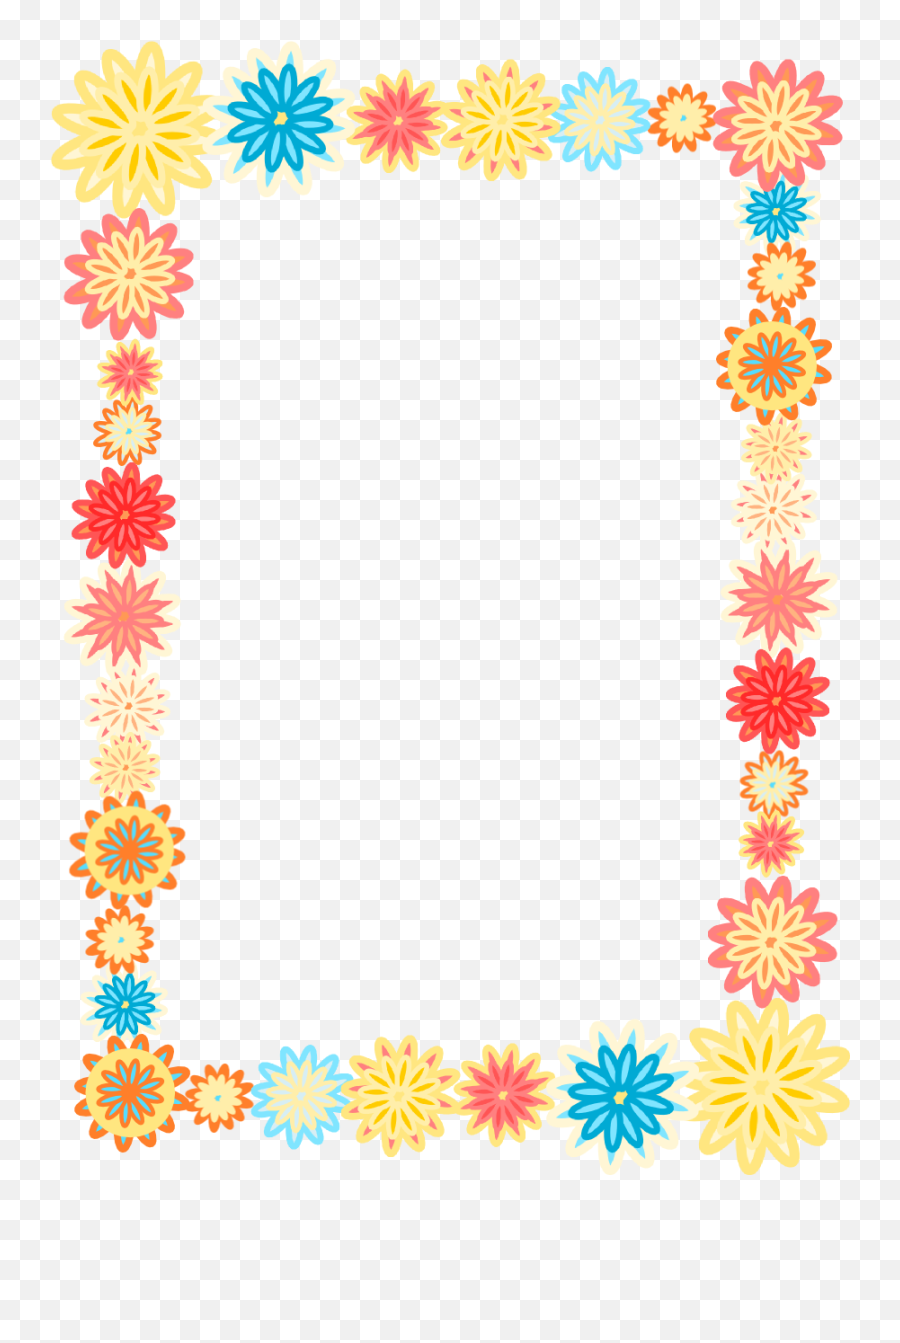 Free Flower Frame Cliparts Download Free Flower Frame - Colorful Transparent Background Border Emoji,Floral Frame Clipart